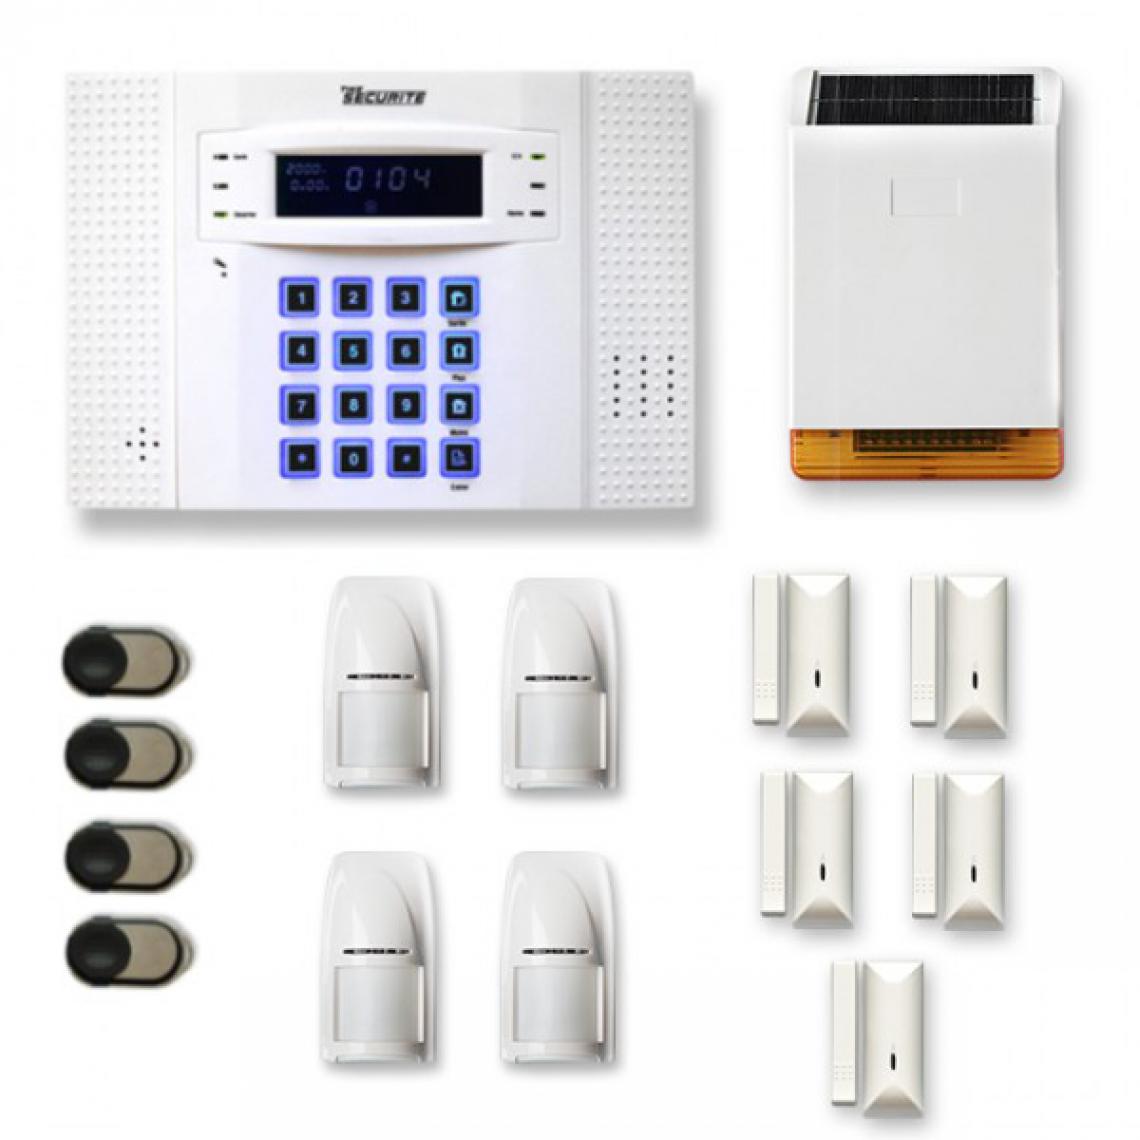 Tike Securite - Alarme maison sans fil DNB25 Compatible Box internet - Alarme connectée